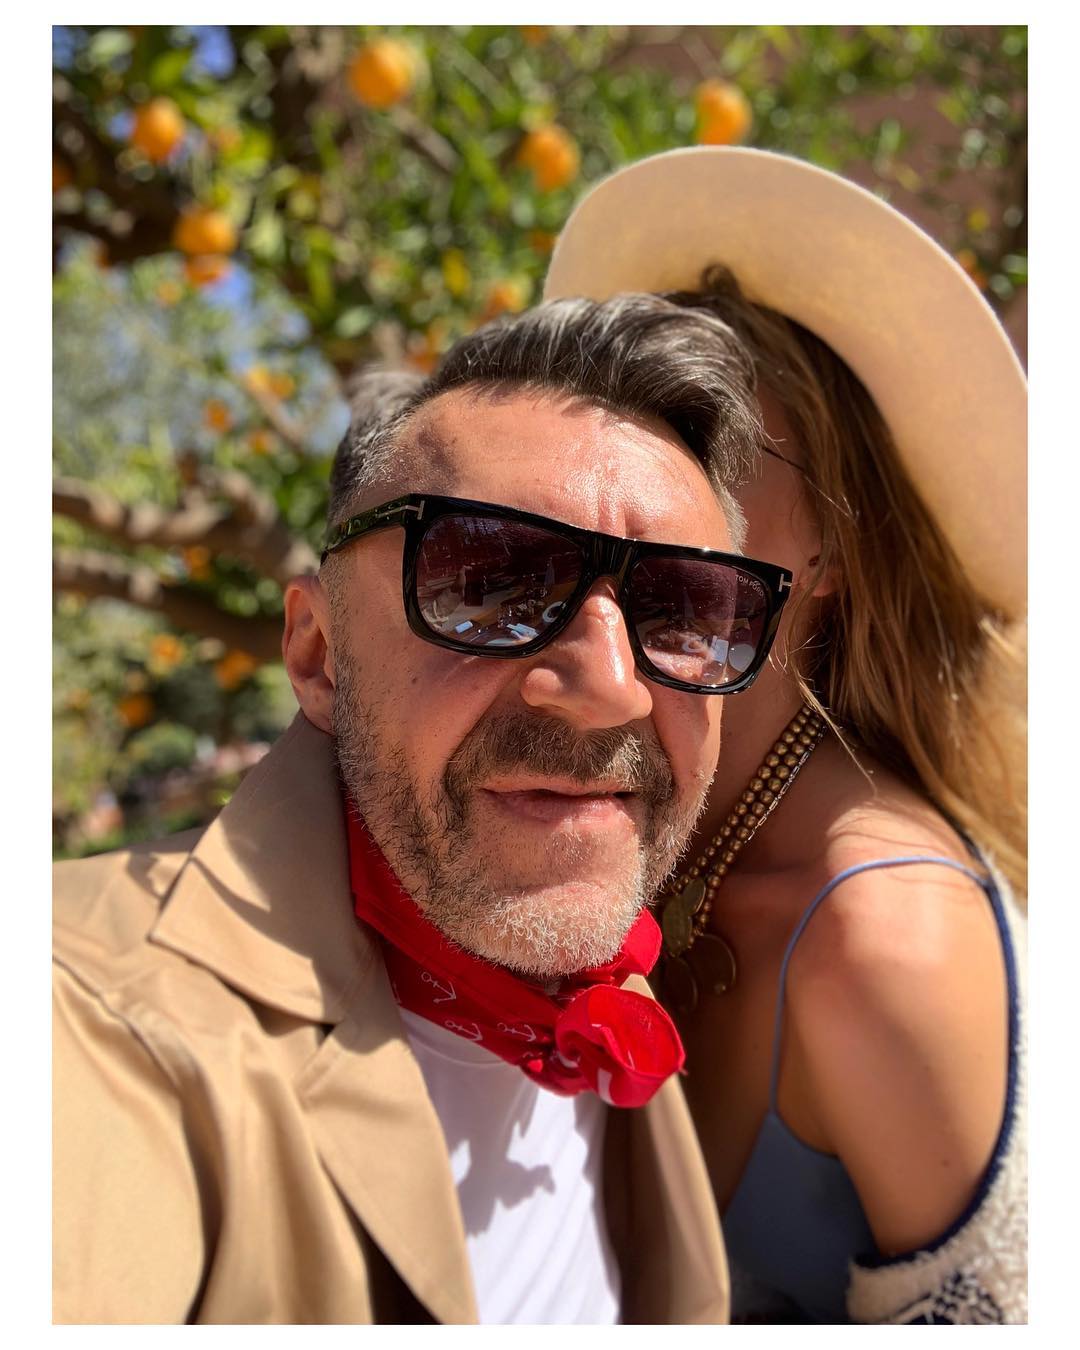 Сергей Шнуров в солнцезащитных очках с женой Ольгой Абрамовой на отдыхе в Марокко, Марракеш. Портрет, 2019 год